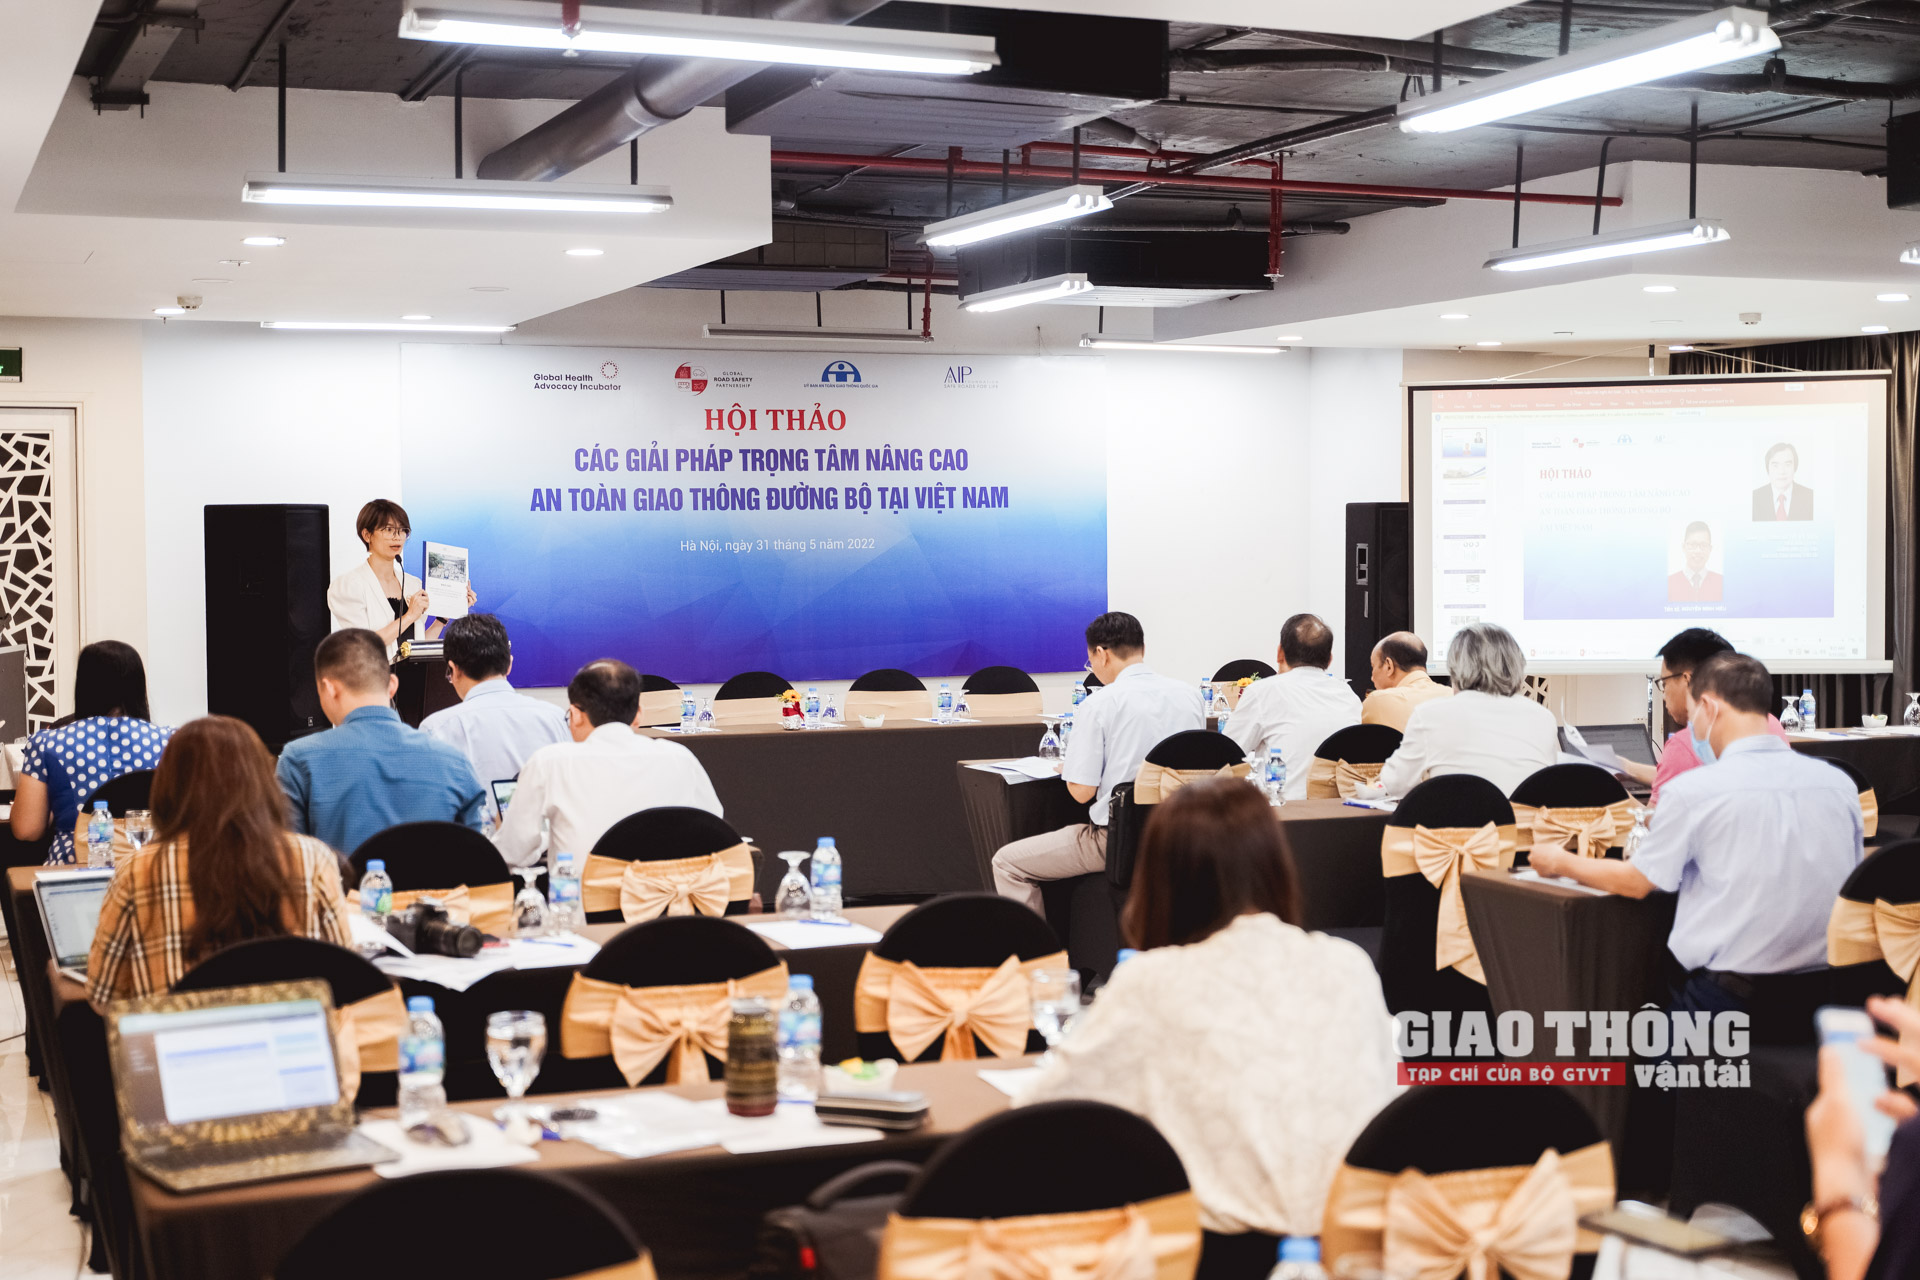 Hội thảo Các giải pháp trọng tâm nâng cao ATGT đường bộ tại Việt Nam khai mạc vào sáng nay (31/5)